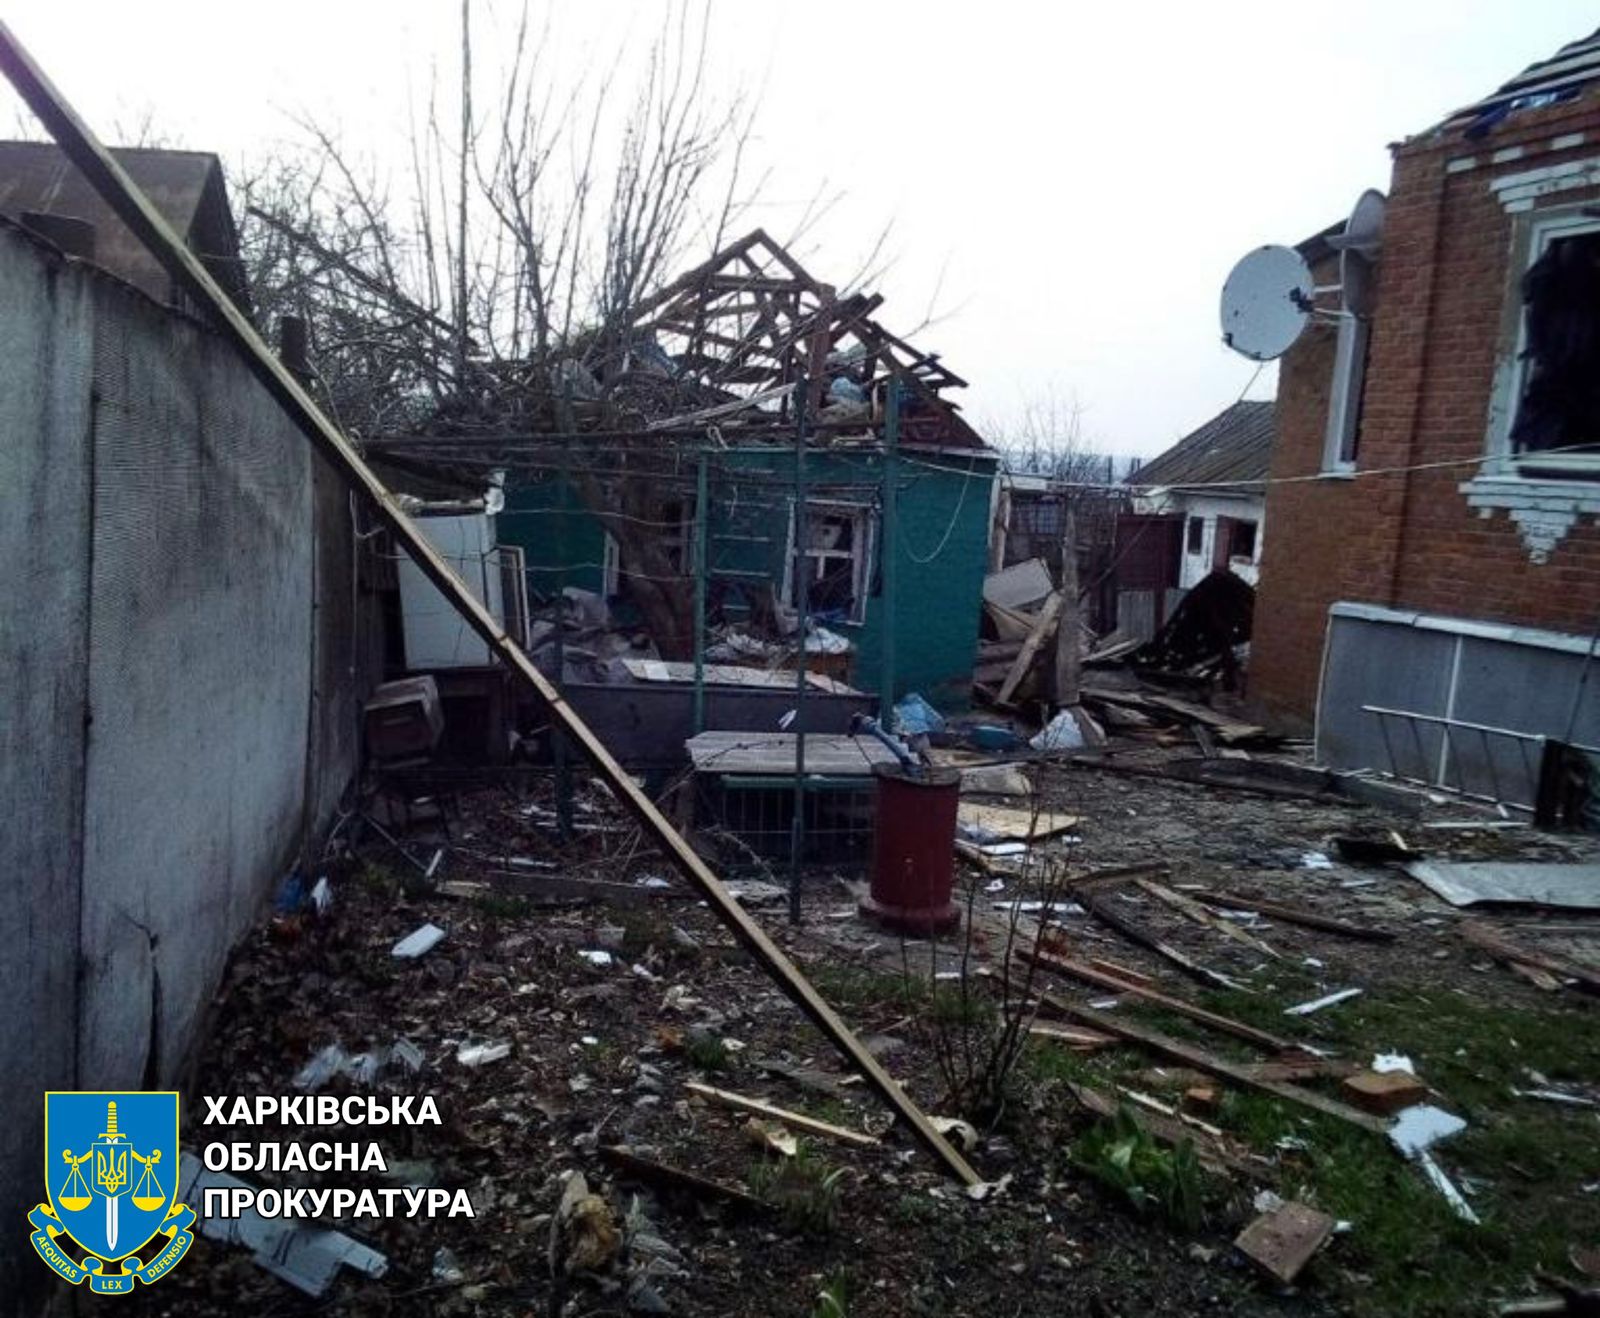 Російська армія вкотре обстріляла Харківщину, загинув чоловік, його 11-річний син поранений – розпочато провадження